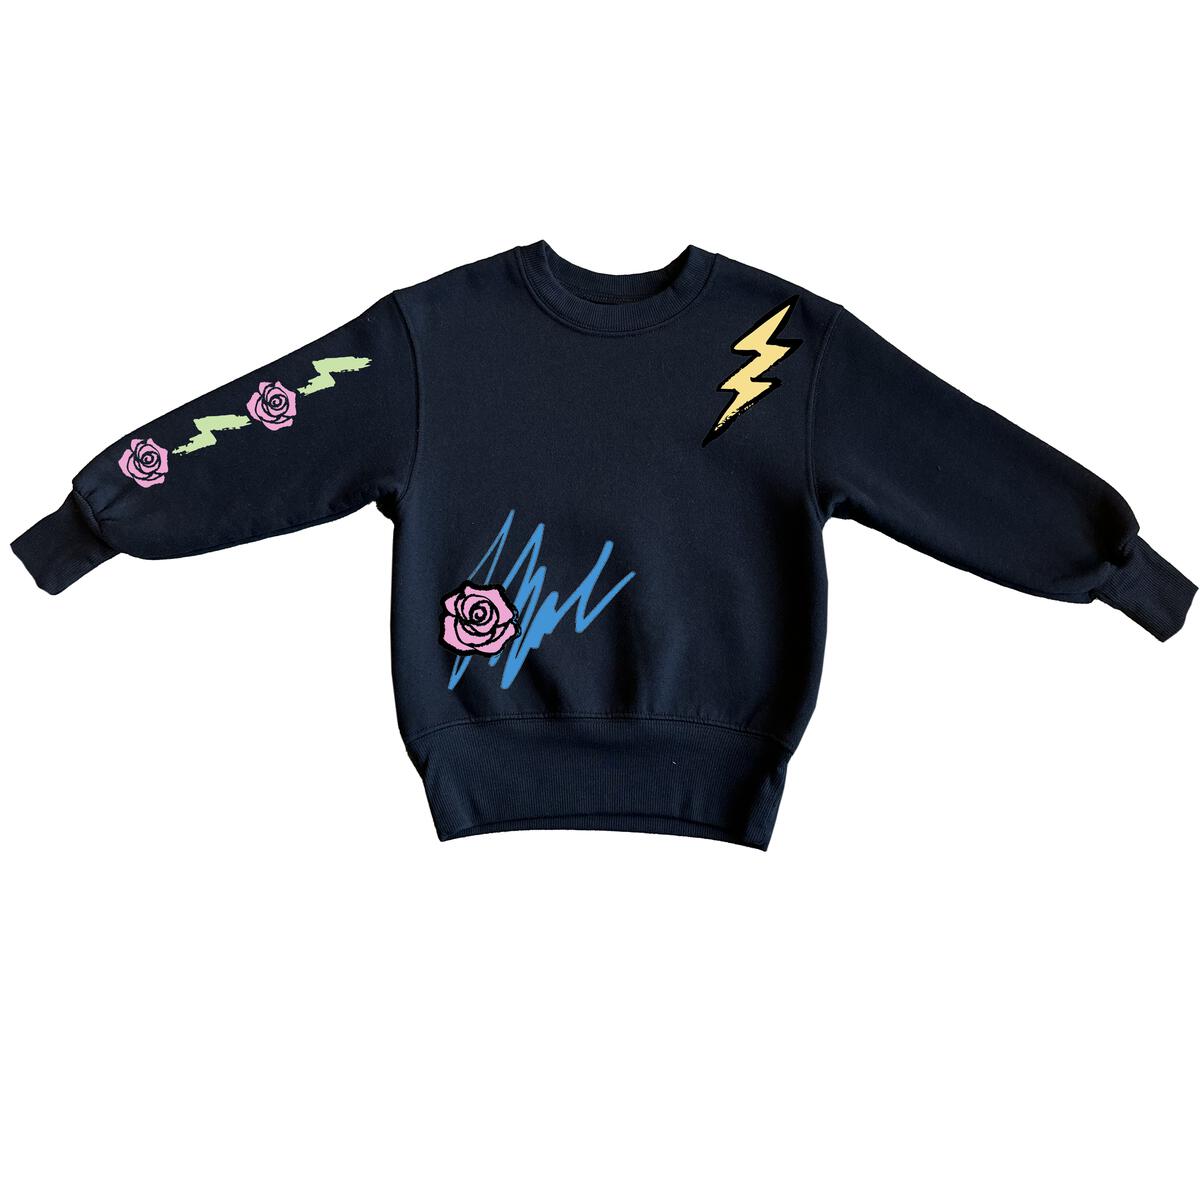 Rowdy Sprout Rolling Stones Crew Sweatshirt - Twinkle Twinkle Little One